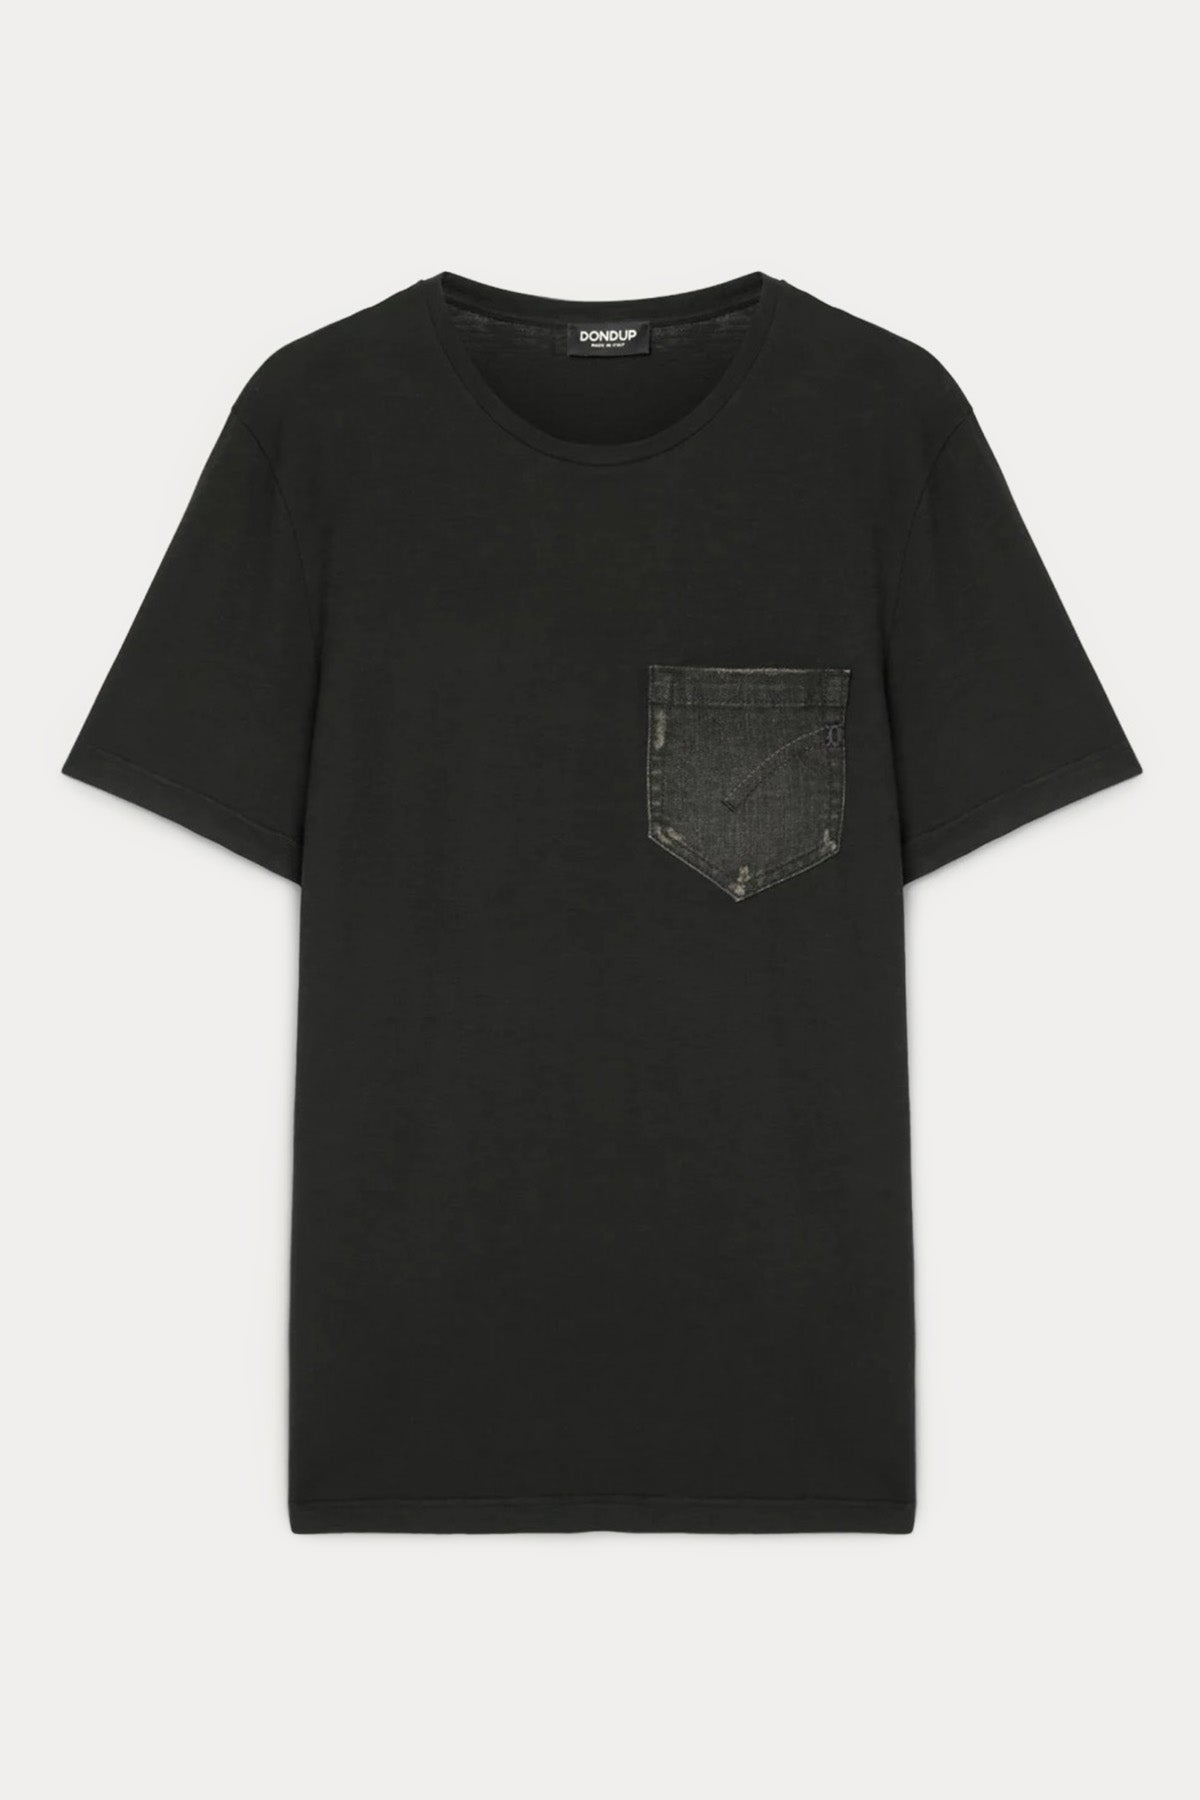 Dondup Yuvarlak Yaka Denim Cep Detaylı Logolu T-shirt-Libas Trendy Fashion Store